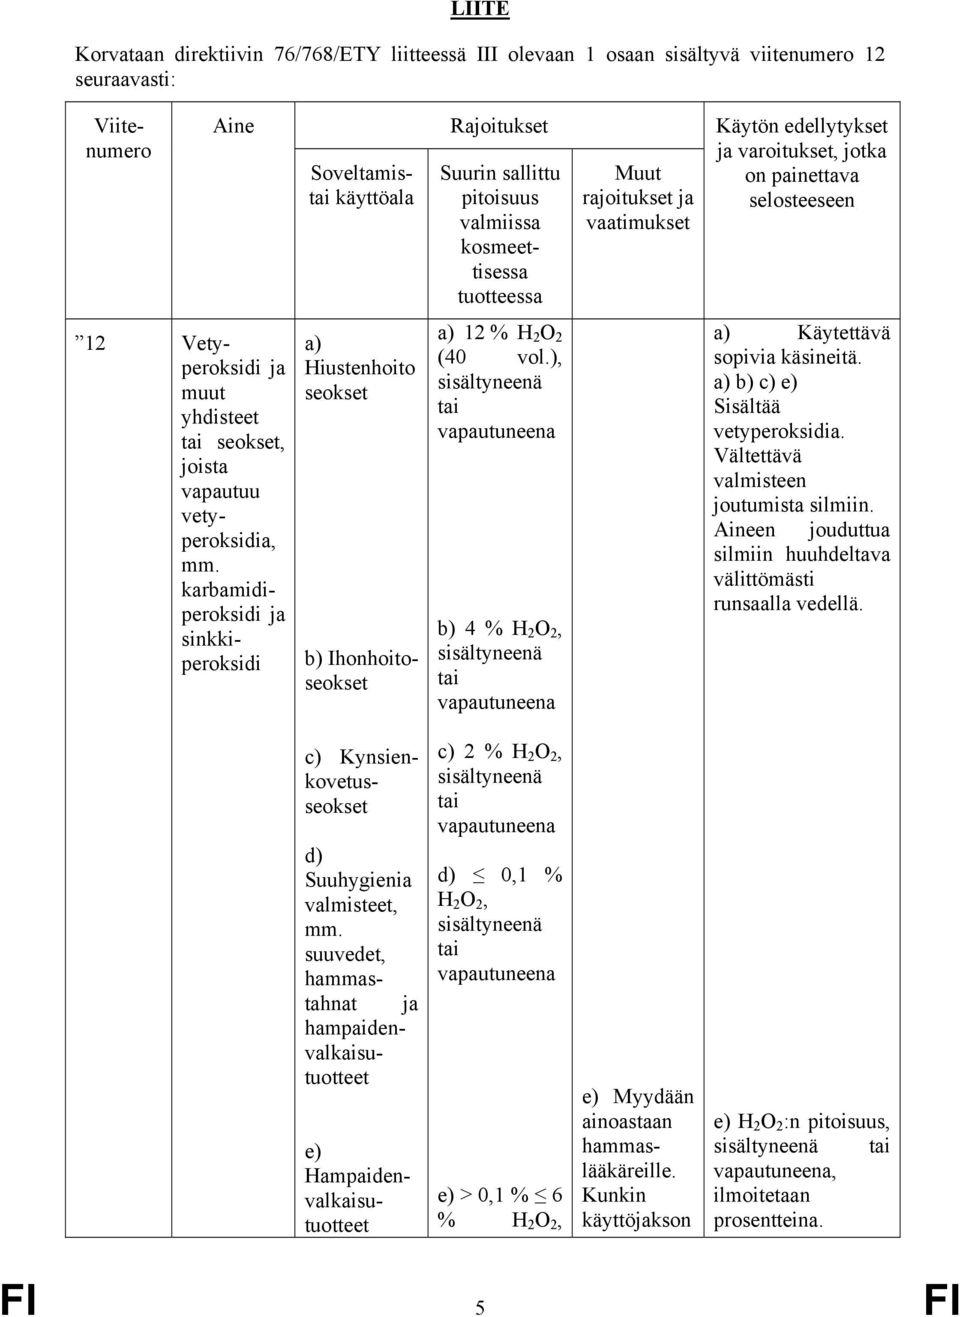 vetyperoksidia, mm. karbamidiperoksidi ja sinkkiperoksidi a) Hiustenhoito seokset b) Ihonhoitoseokset a) 12 % H 2 O 2 (40 vol.), b) 4 % H 2 O 2, a) Käytettävä sopivia käsineitä.